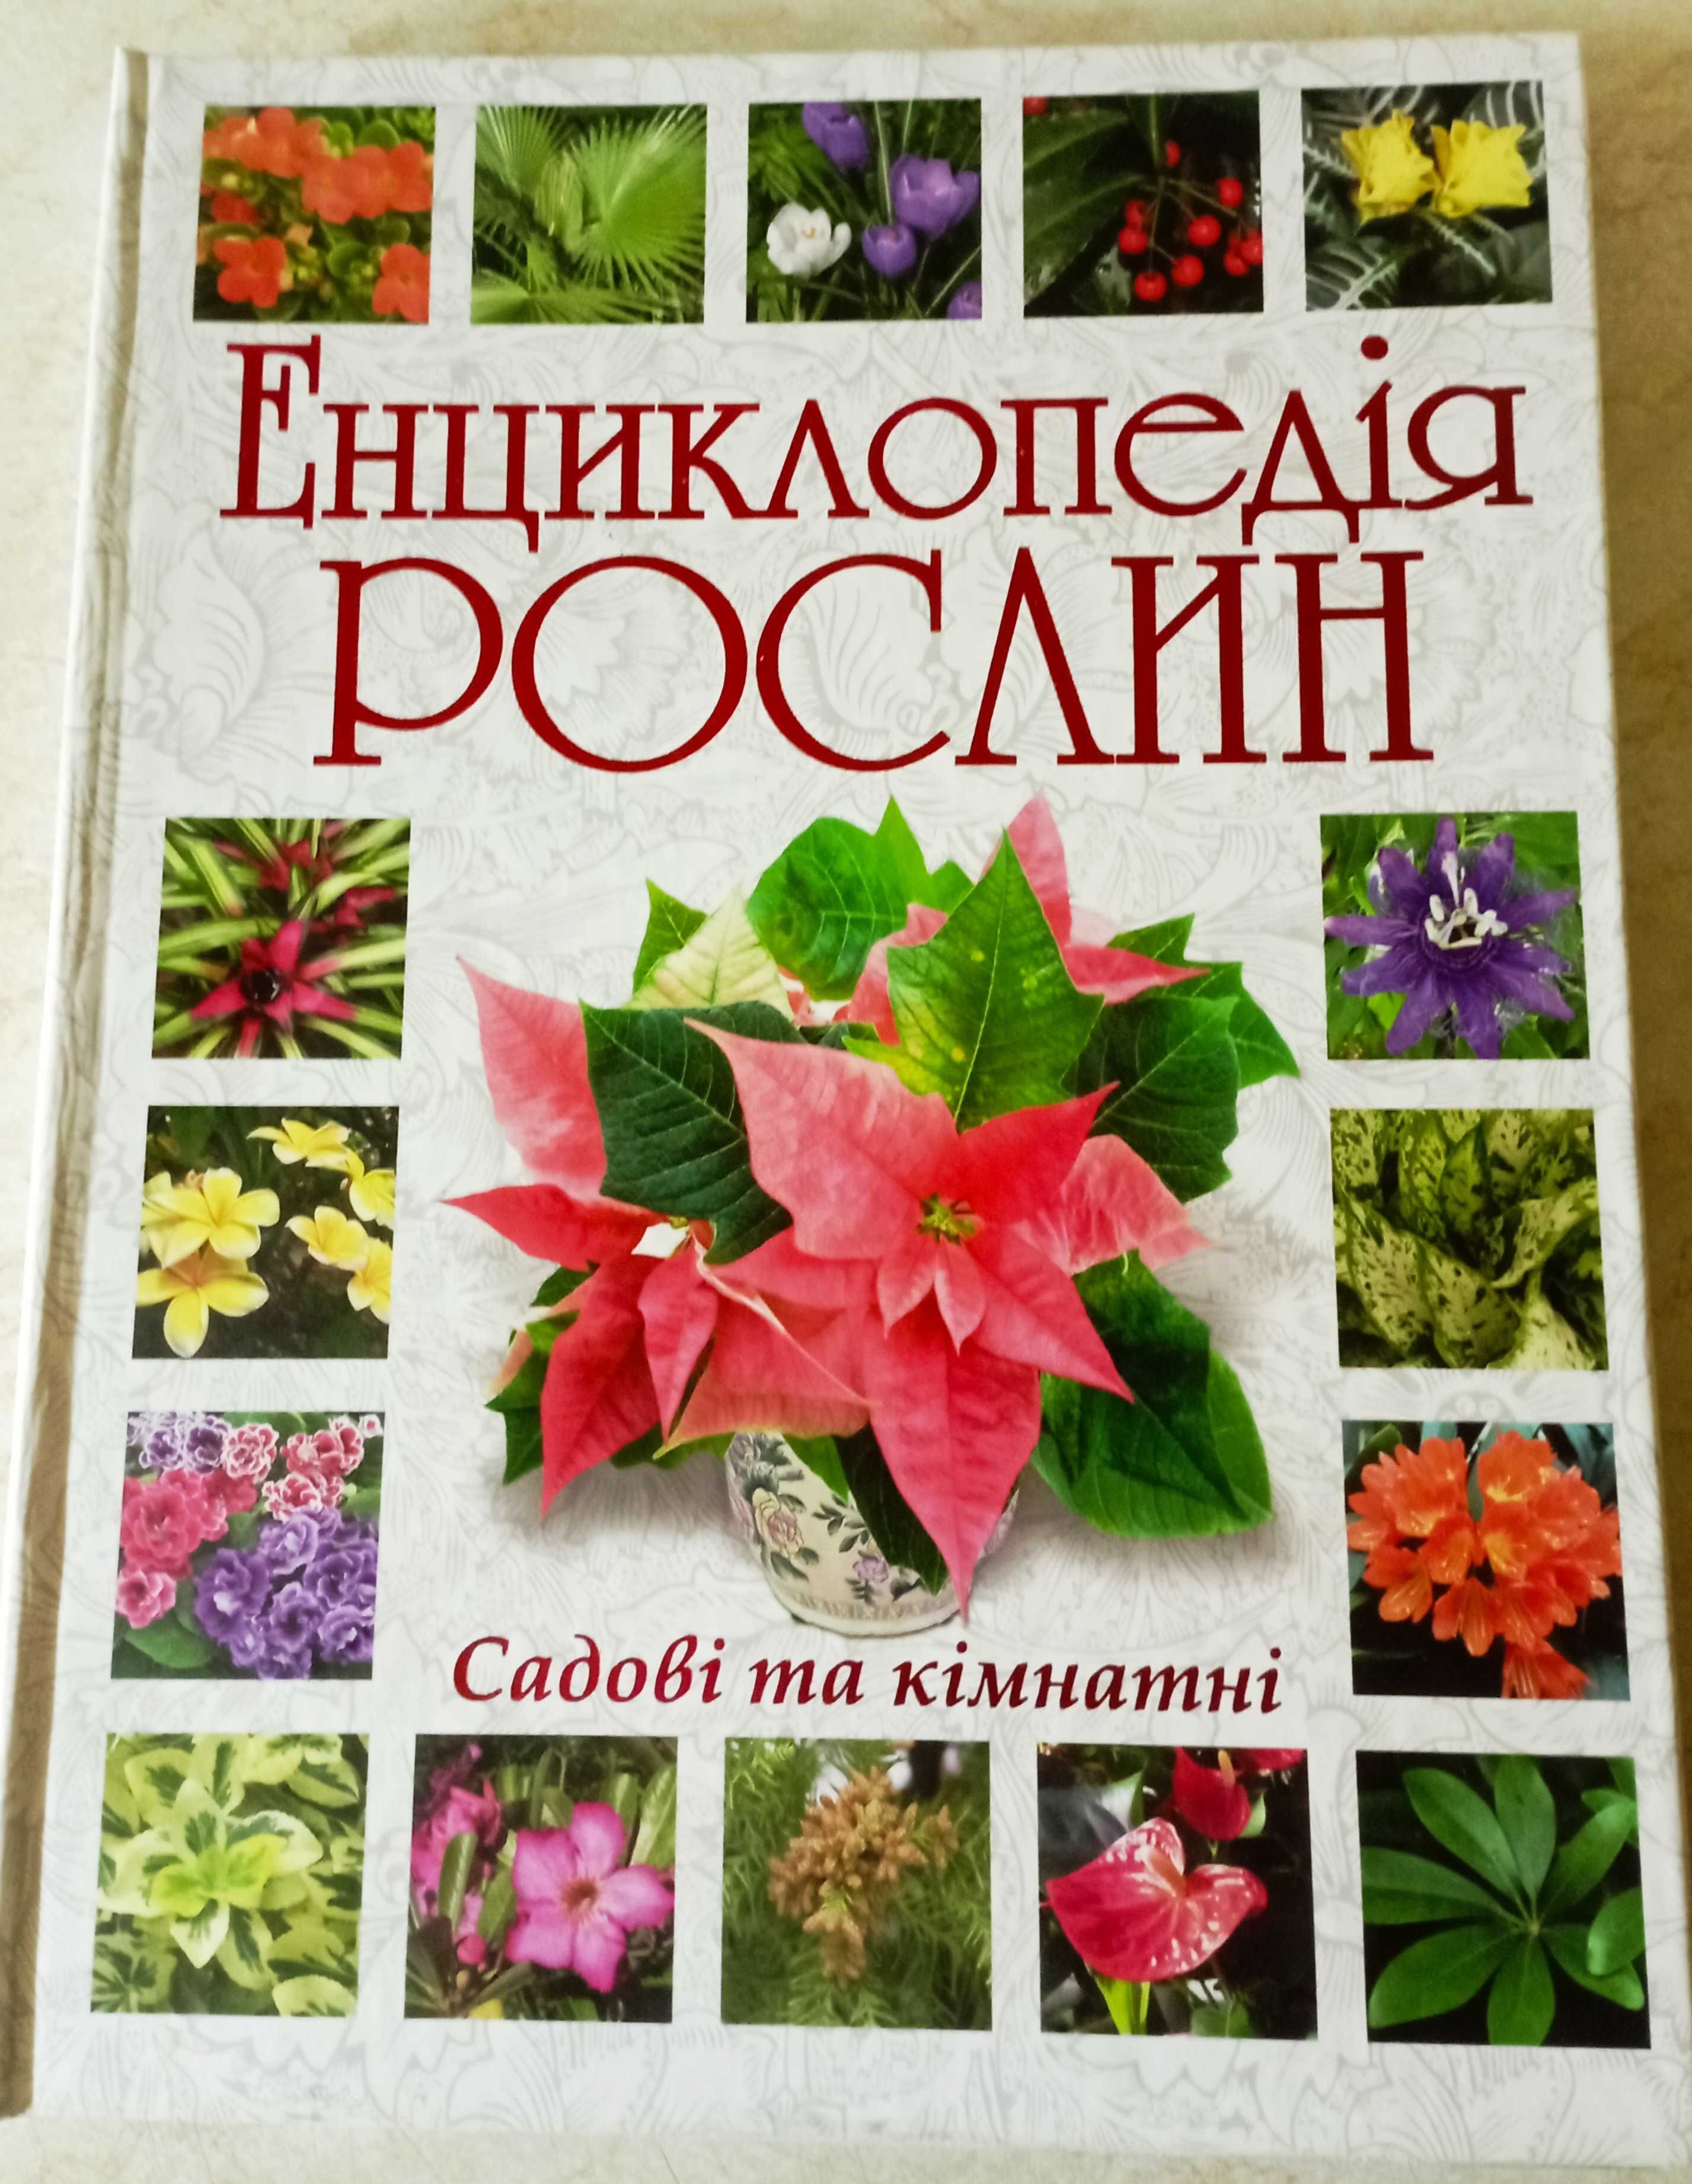 Книги. Альбомы. Энциклопедии. Цветы. Комнатные и садовые растения.